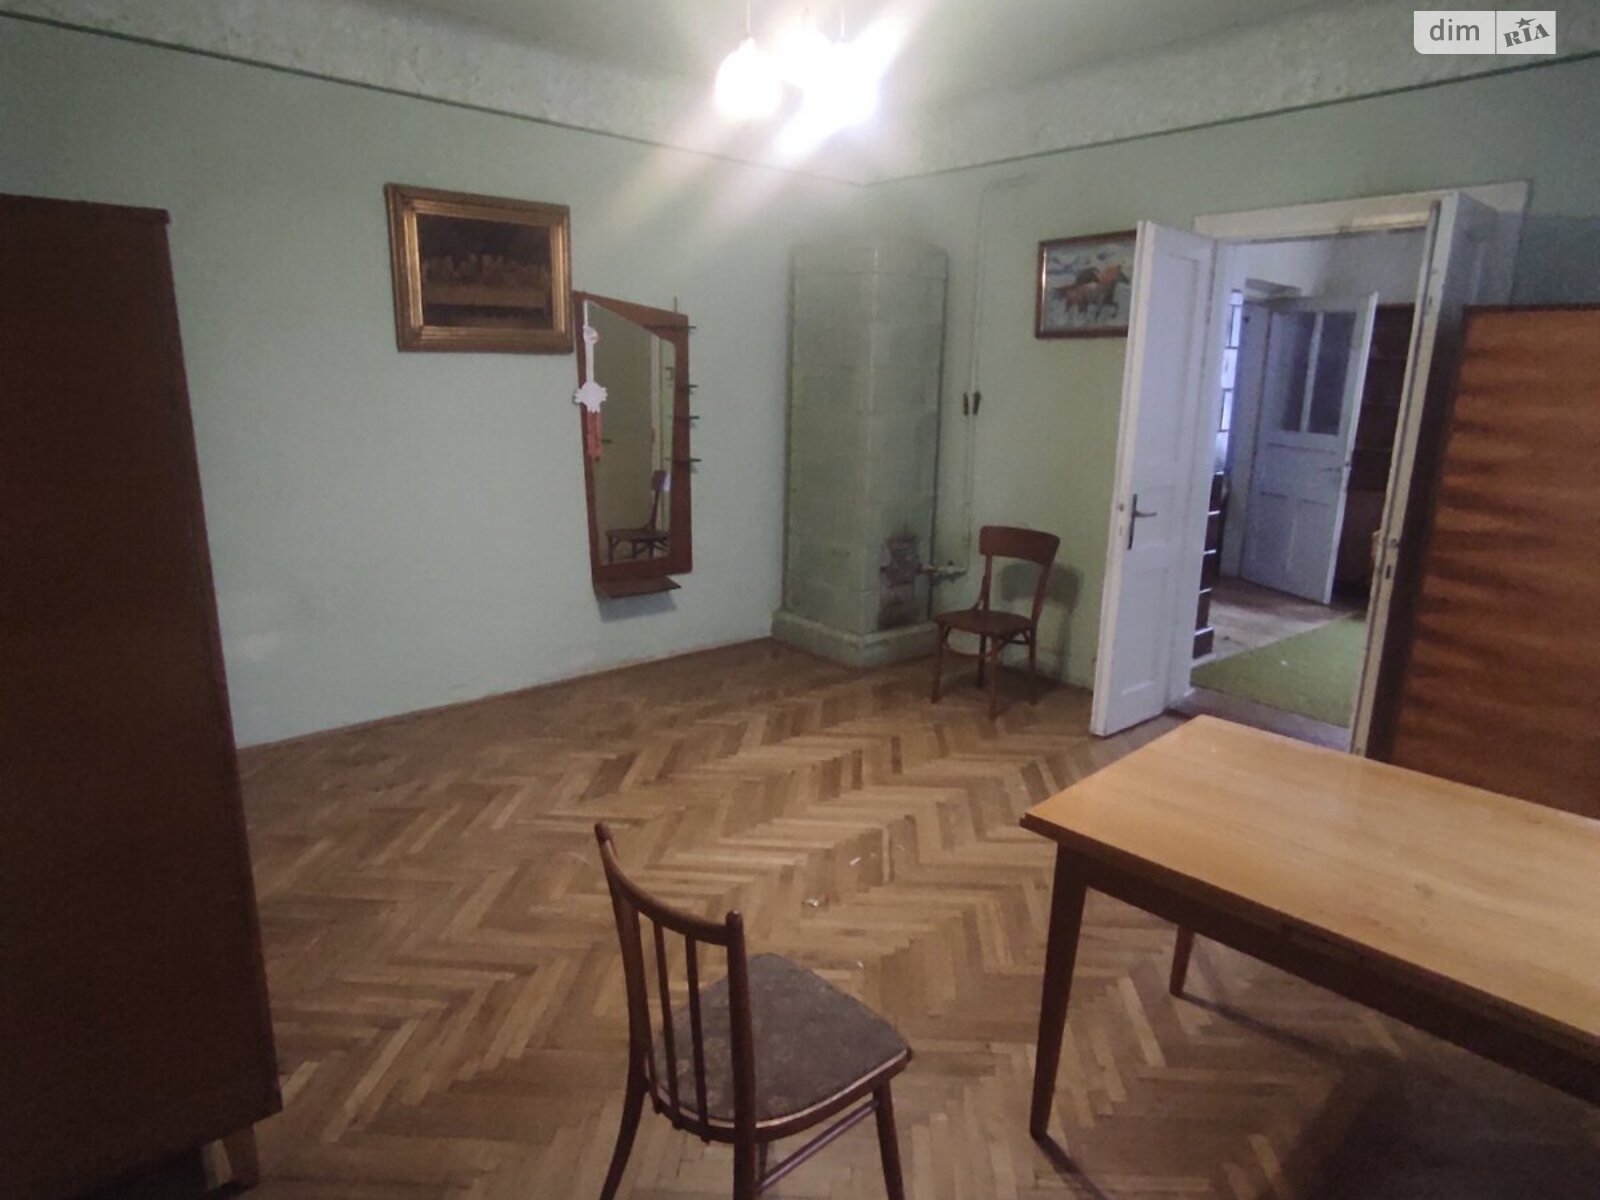 Продажа части дома в Винниках, улица Галицкая, 2 комнаты фото 1